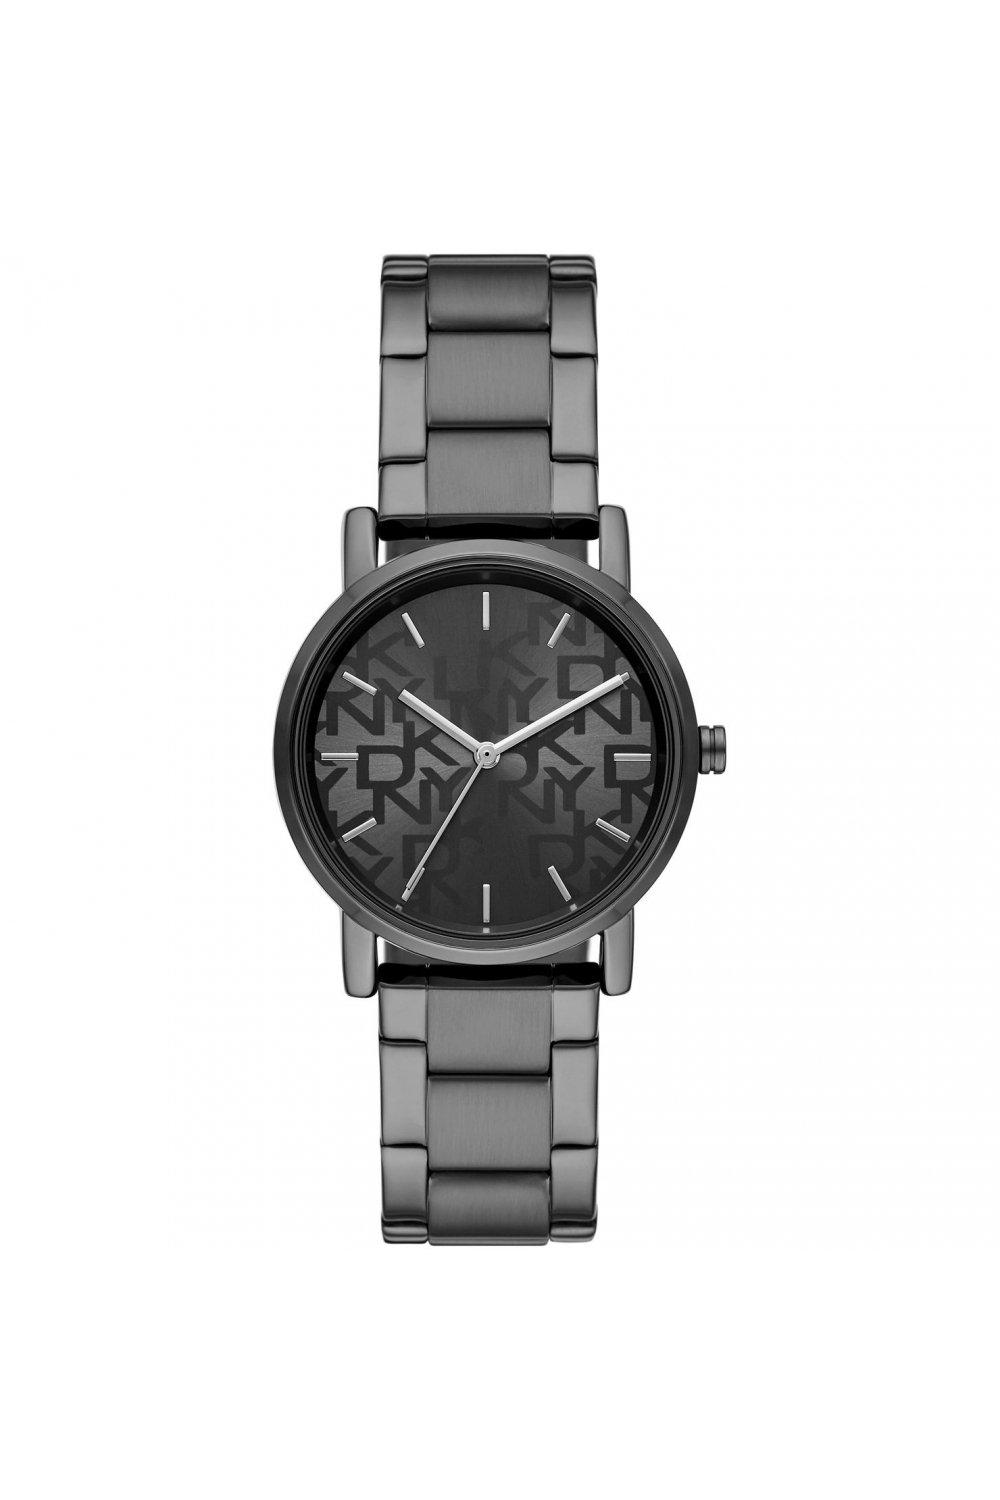 DKNY Soho Fashion Analogue Quartz Watch - NY2970 grey Female